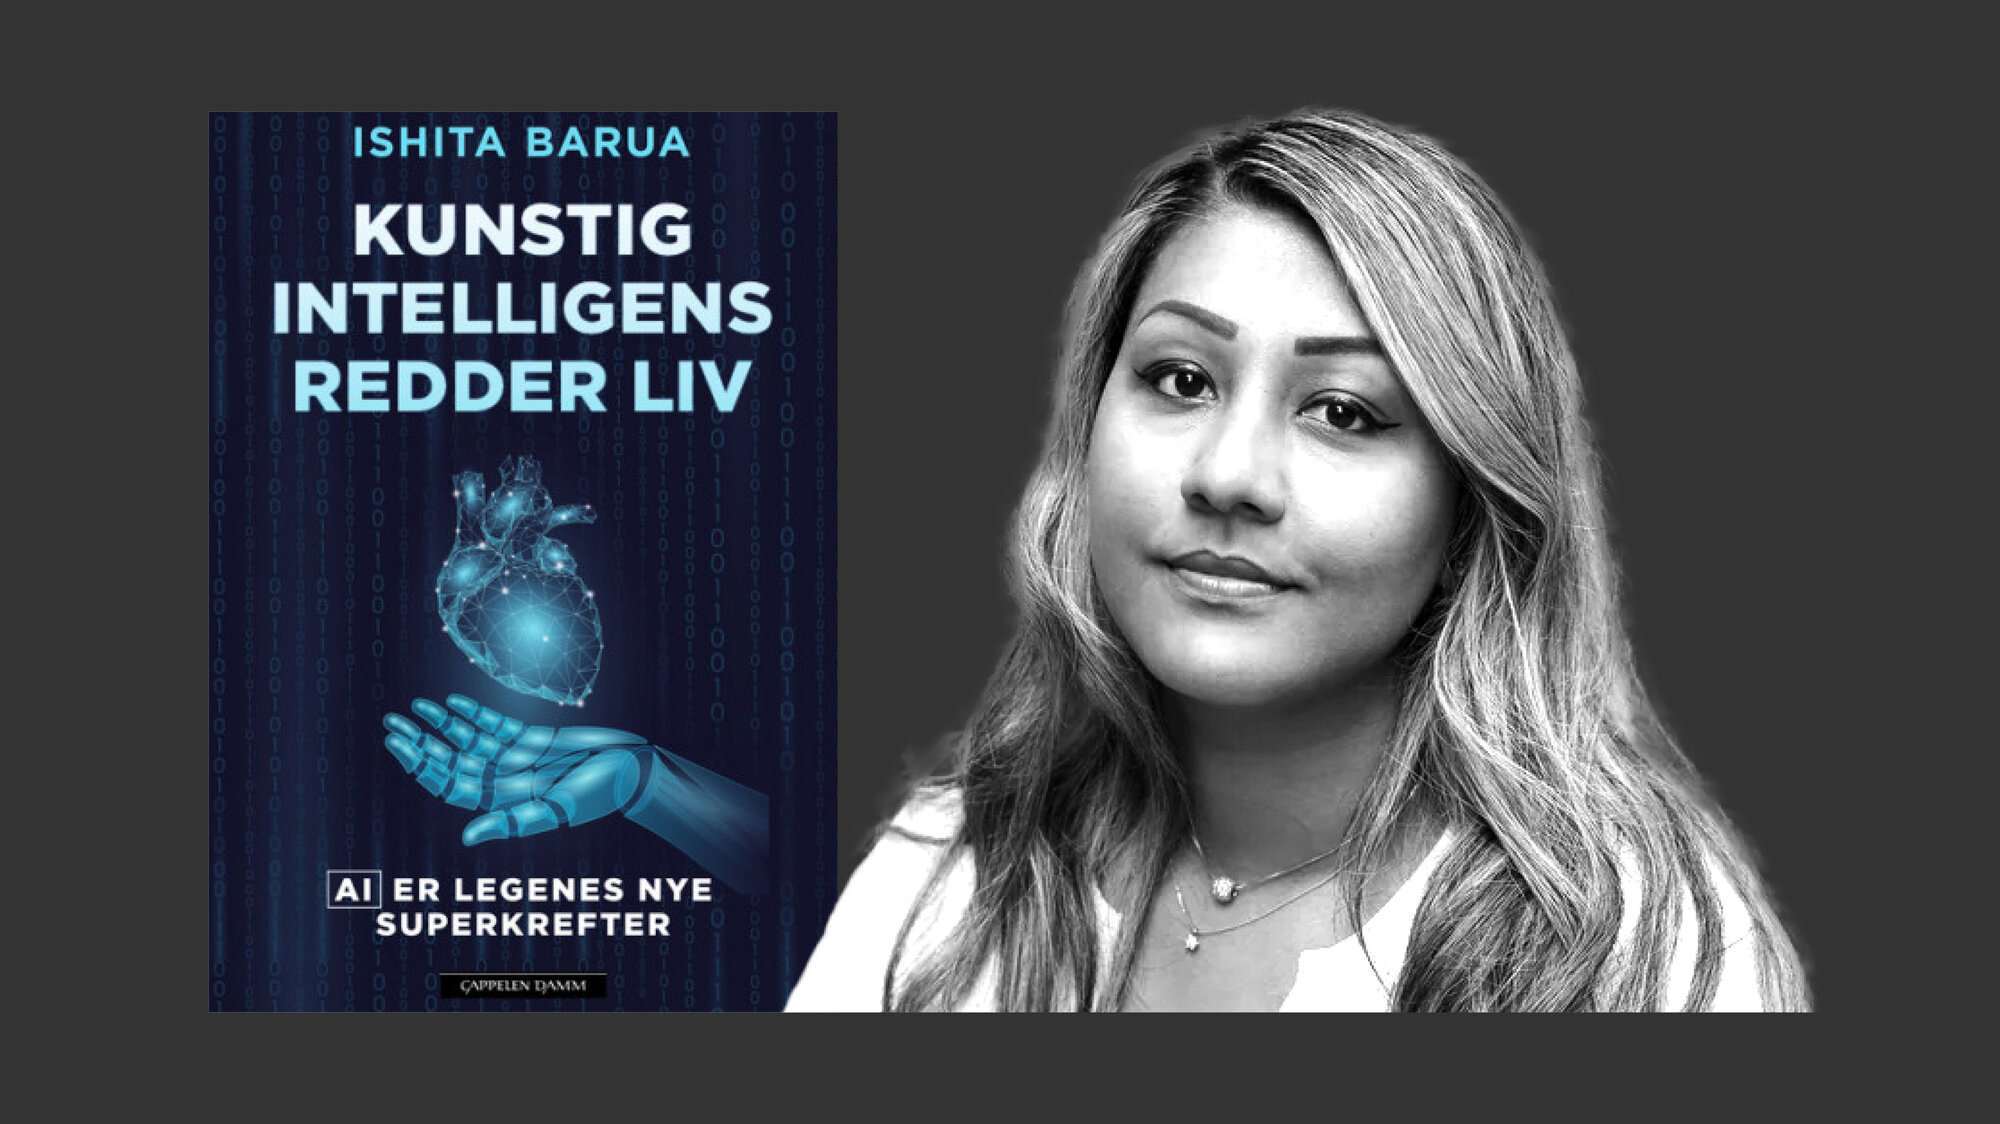 Bildet viser boken "kunstig intelligens redder liv" og forfatteren Ishita Barua